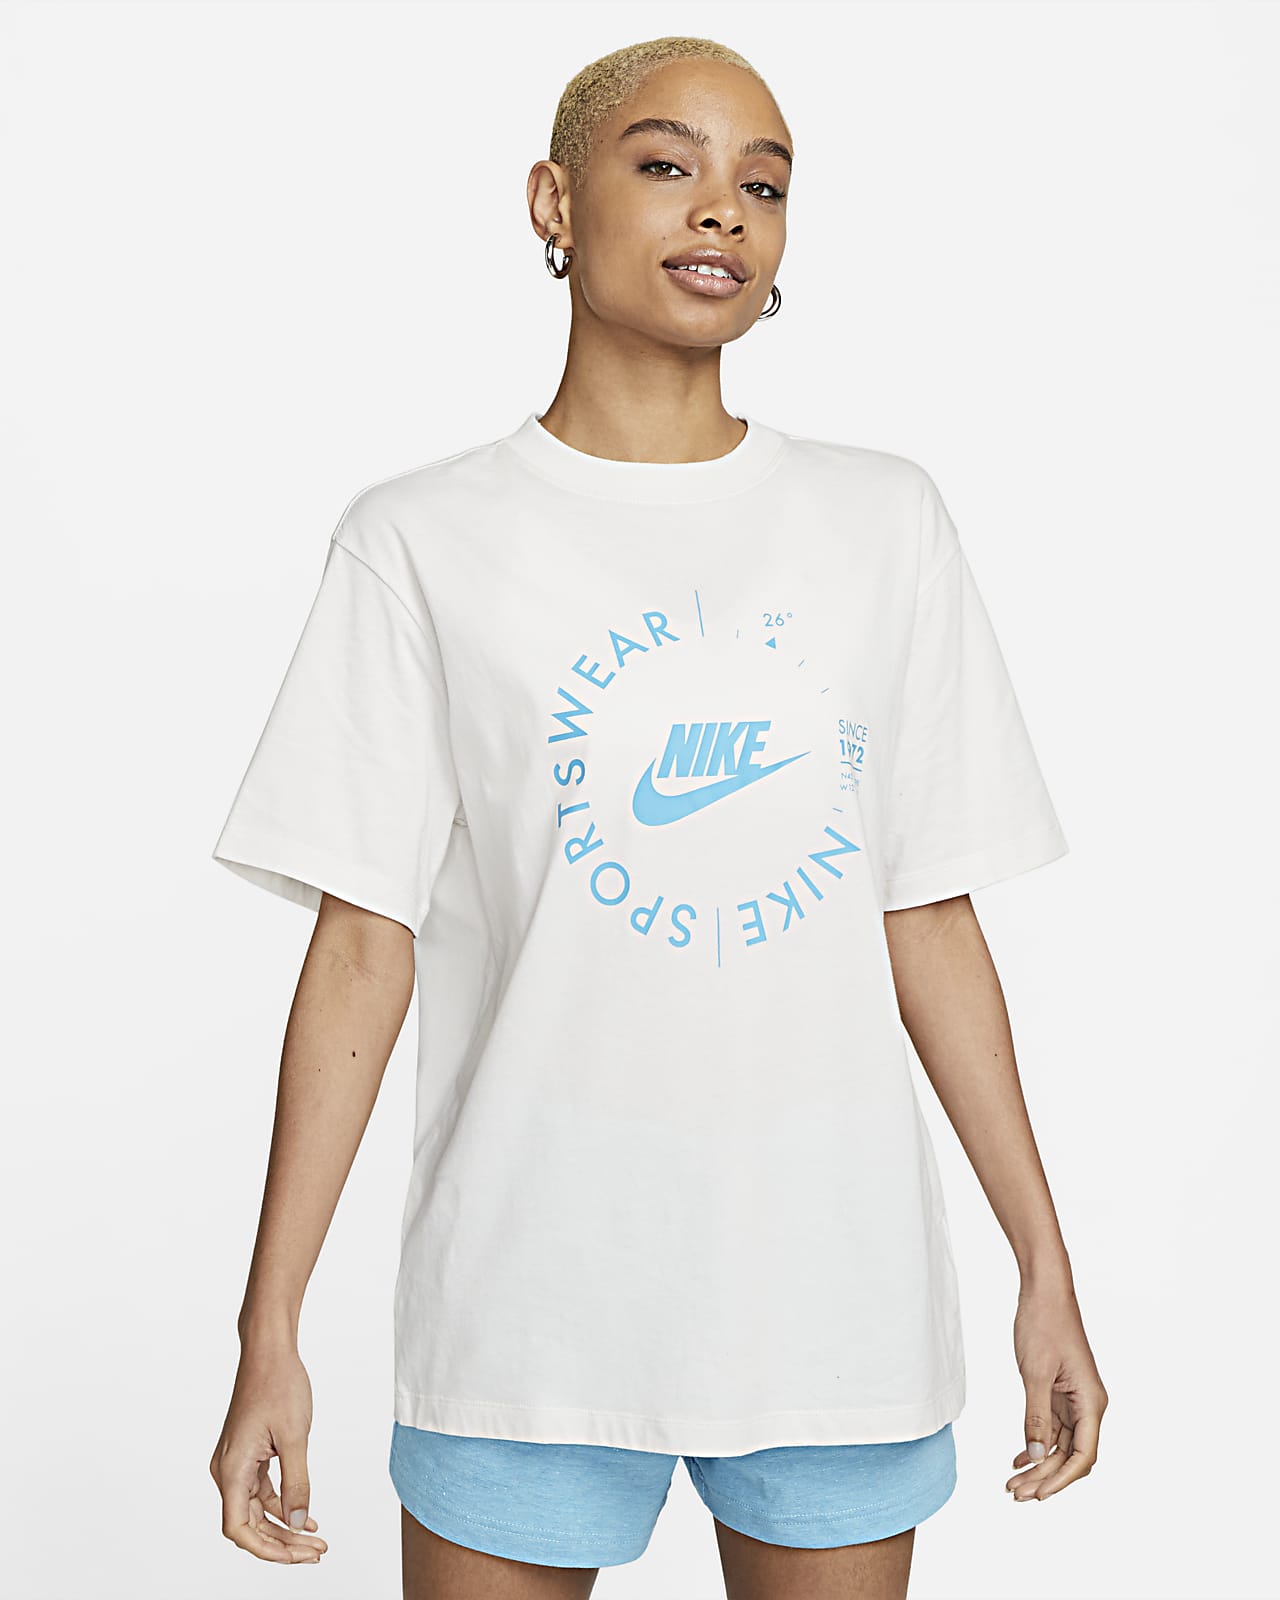 Nike Women's Utility T-shirt. Nike